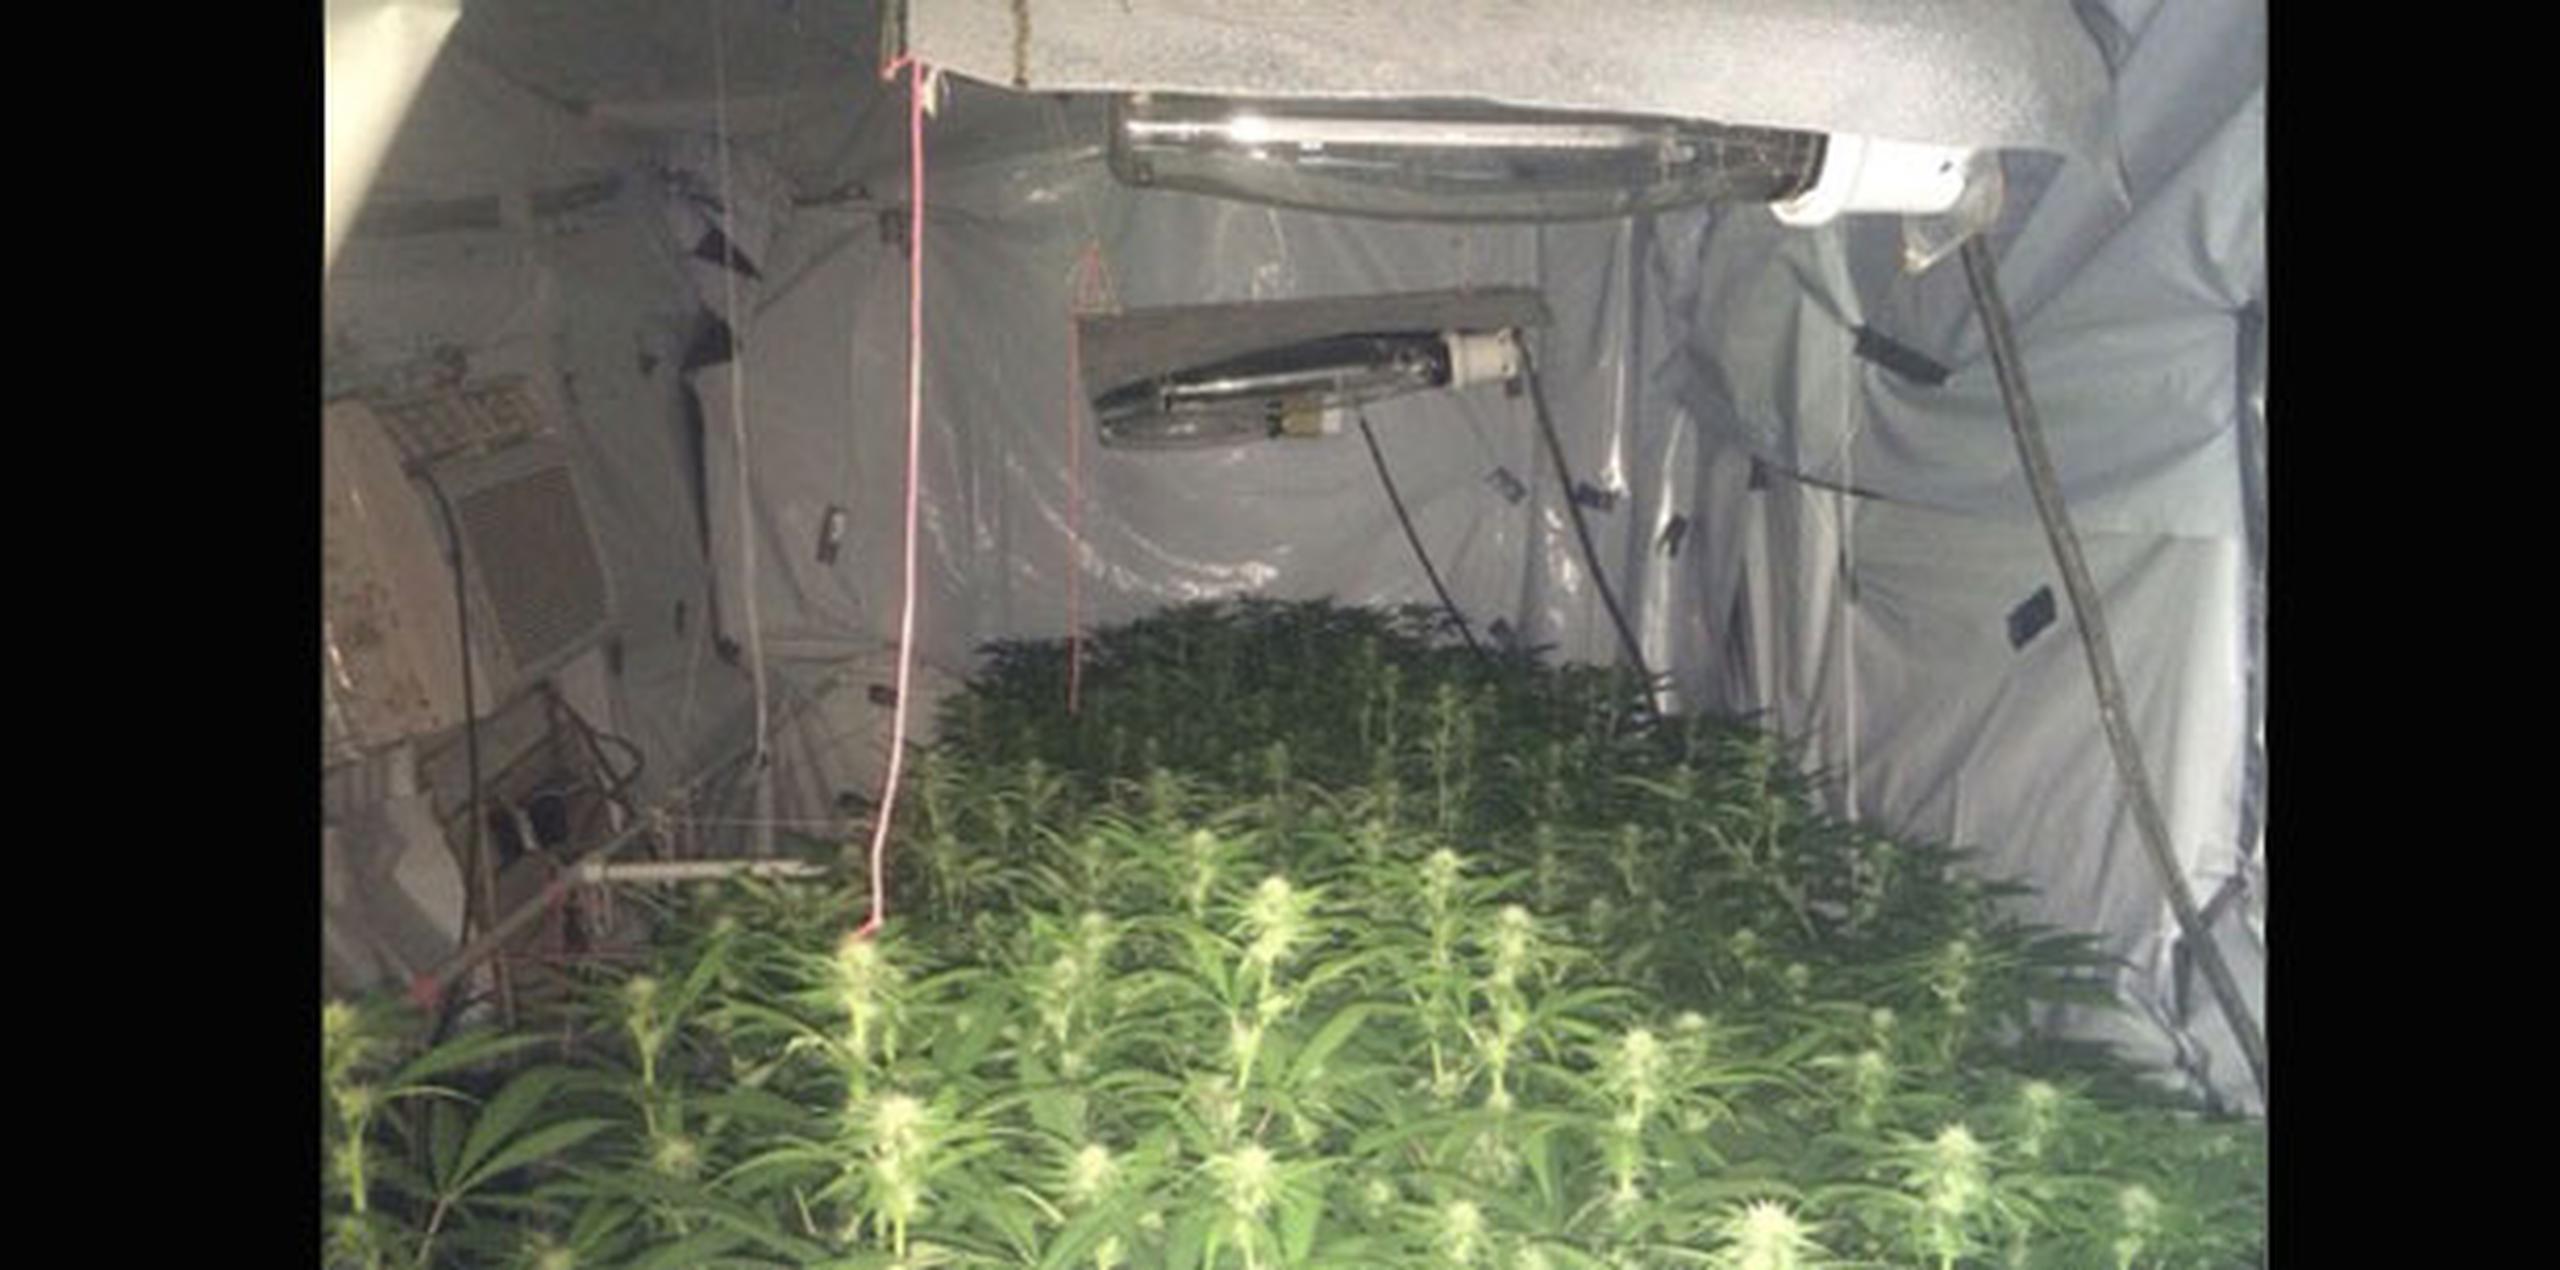 Las autoridades ocuparon cientos de plantas de marihuana en dos invernaderos y un vivero encontrados en una propiedad en San Sebastián. (Suministrada)